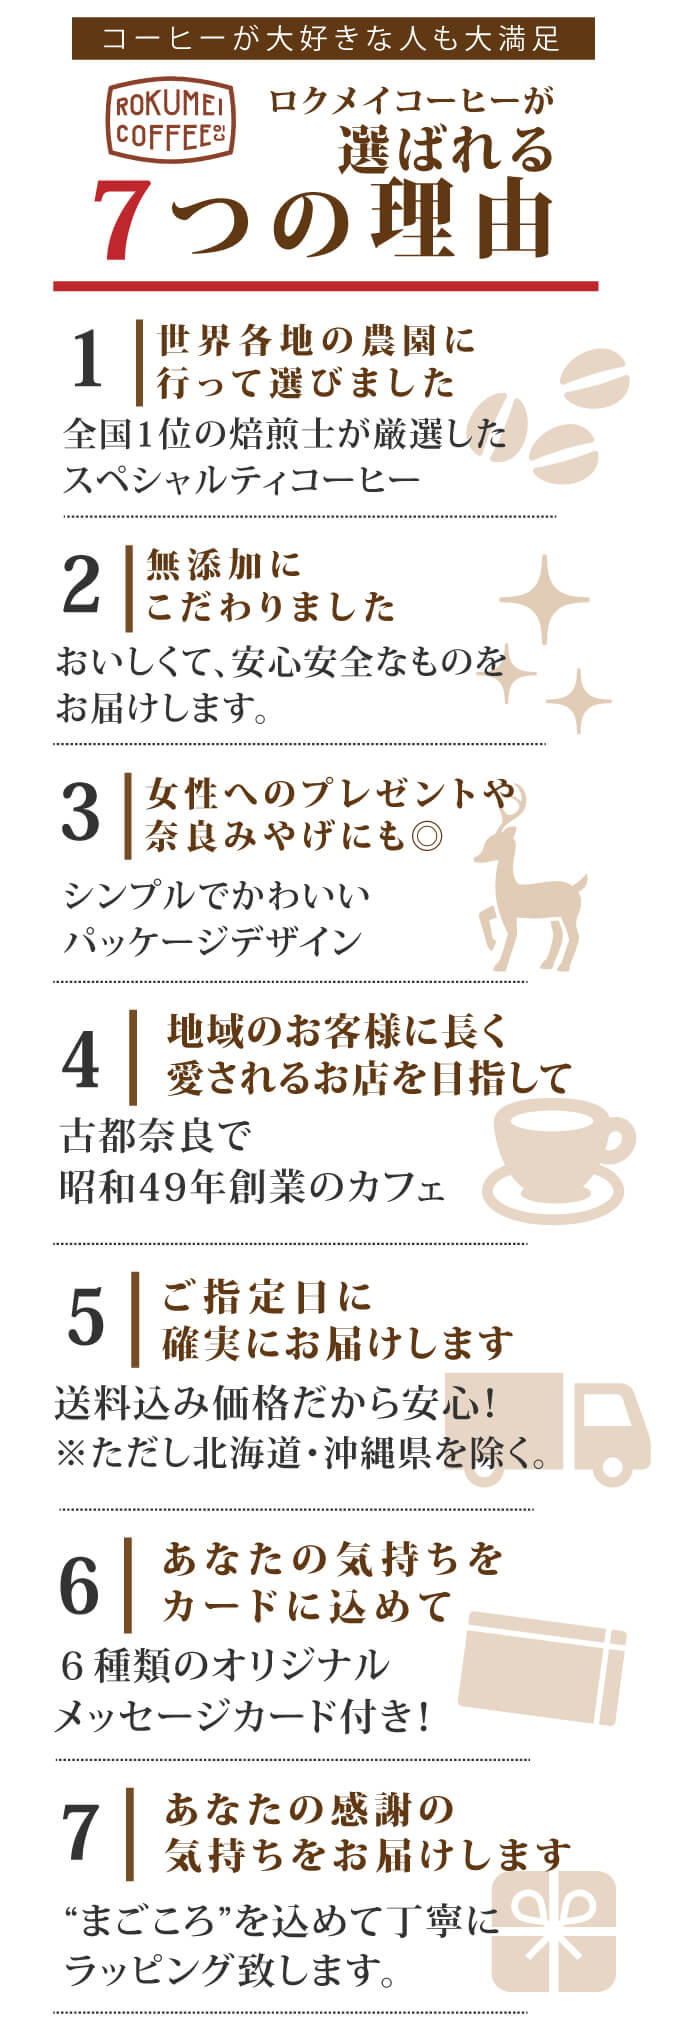 ロクメイコーヒーが選ばれる7つの理由